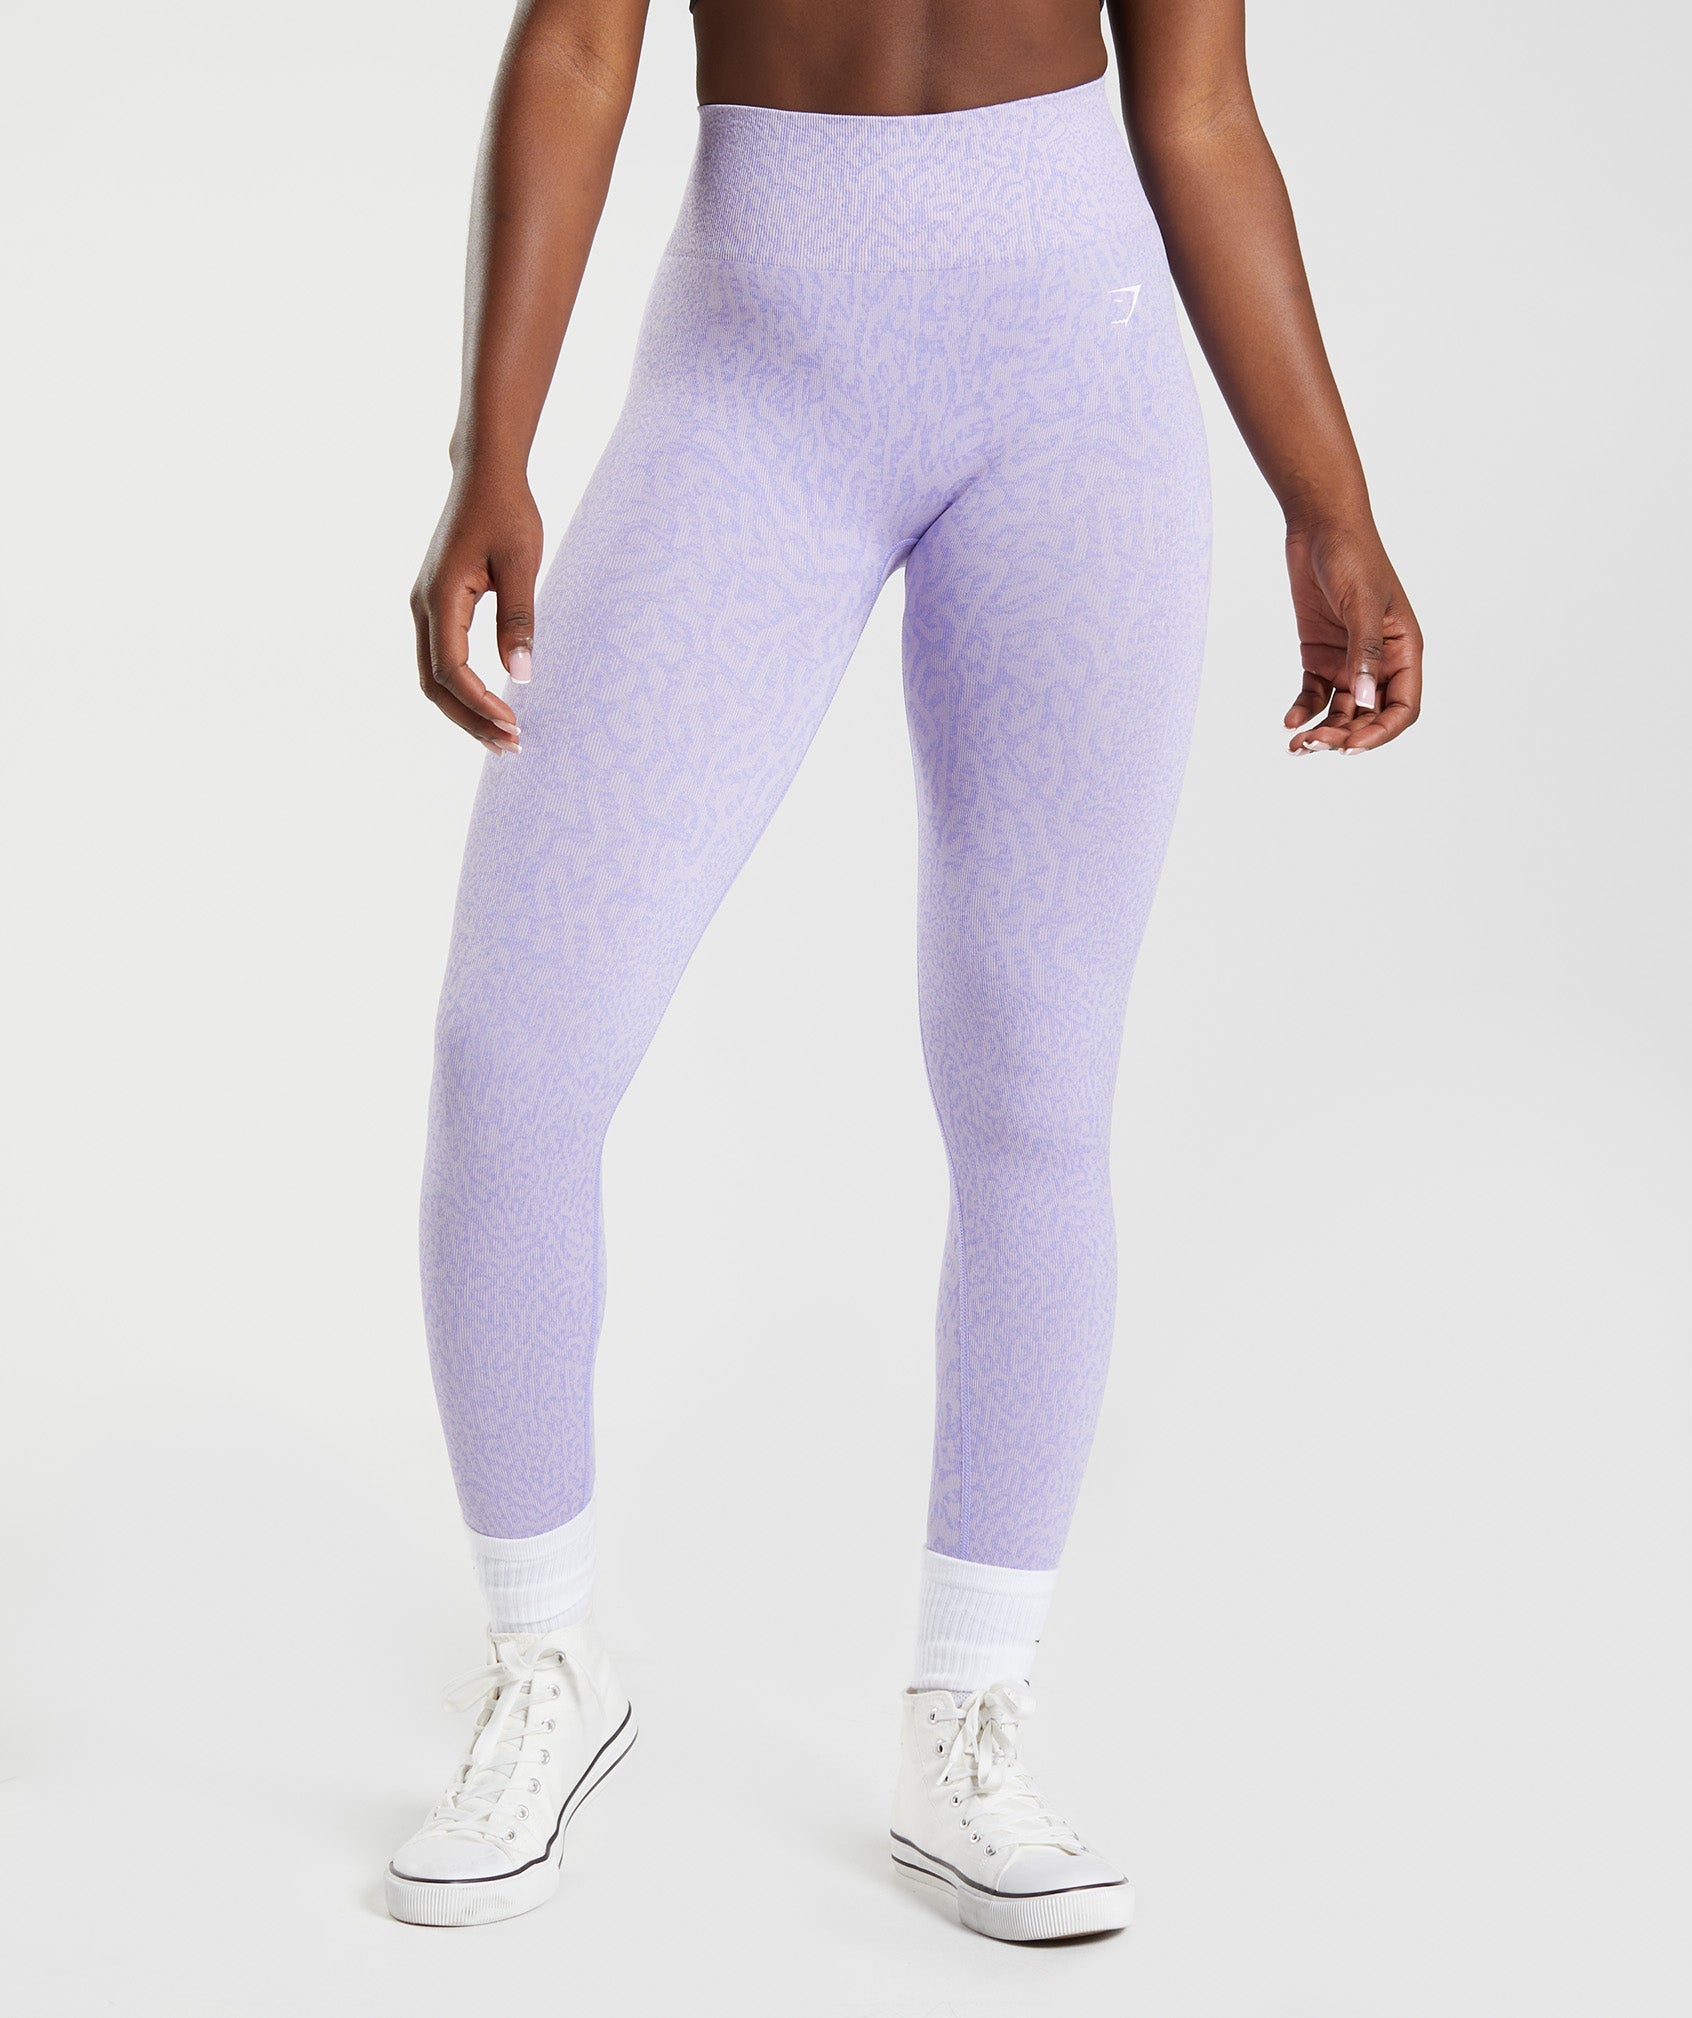 Gymshark Purple Athletic Leggings for Women